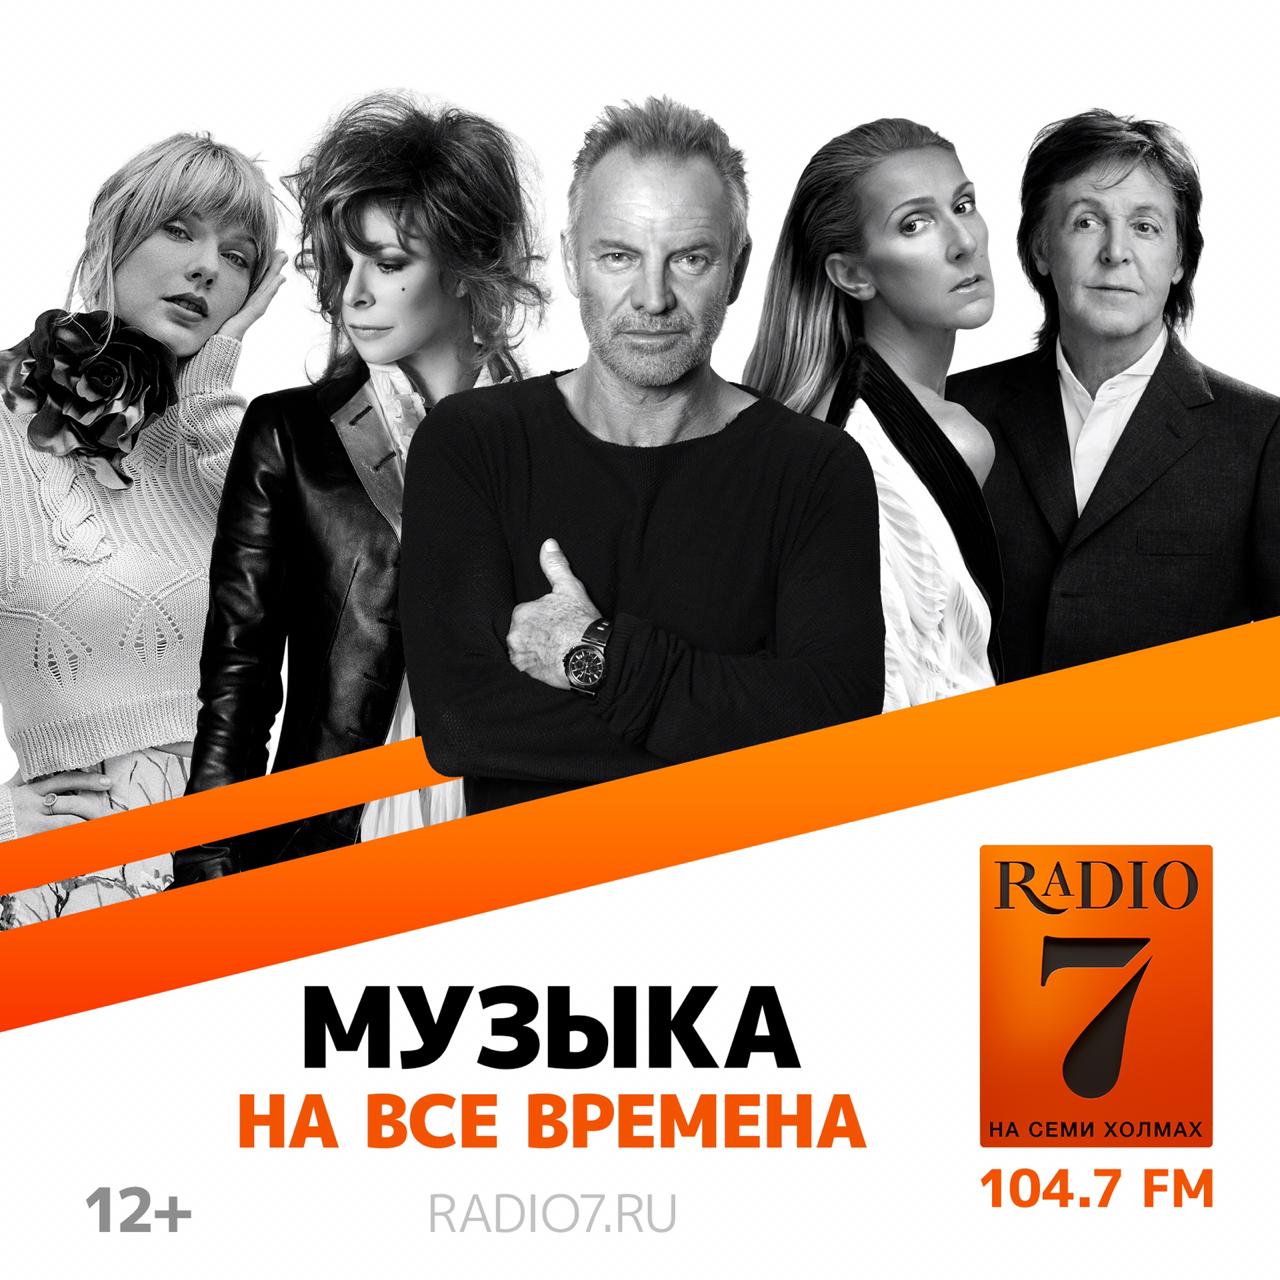 Плейлист семь холмов. Радио на семи холмах. Радио 7 на 7. Радио 7 на семи холмах Москва. Радио 7 реклама.